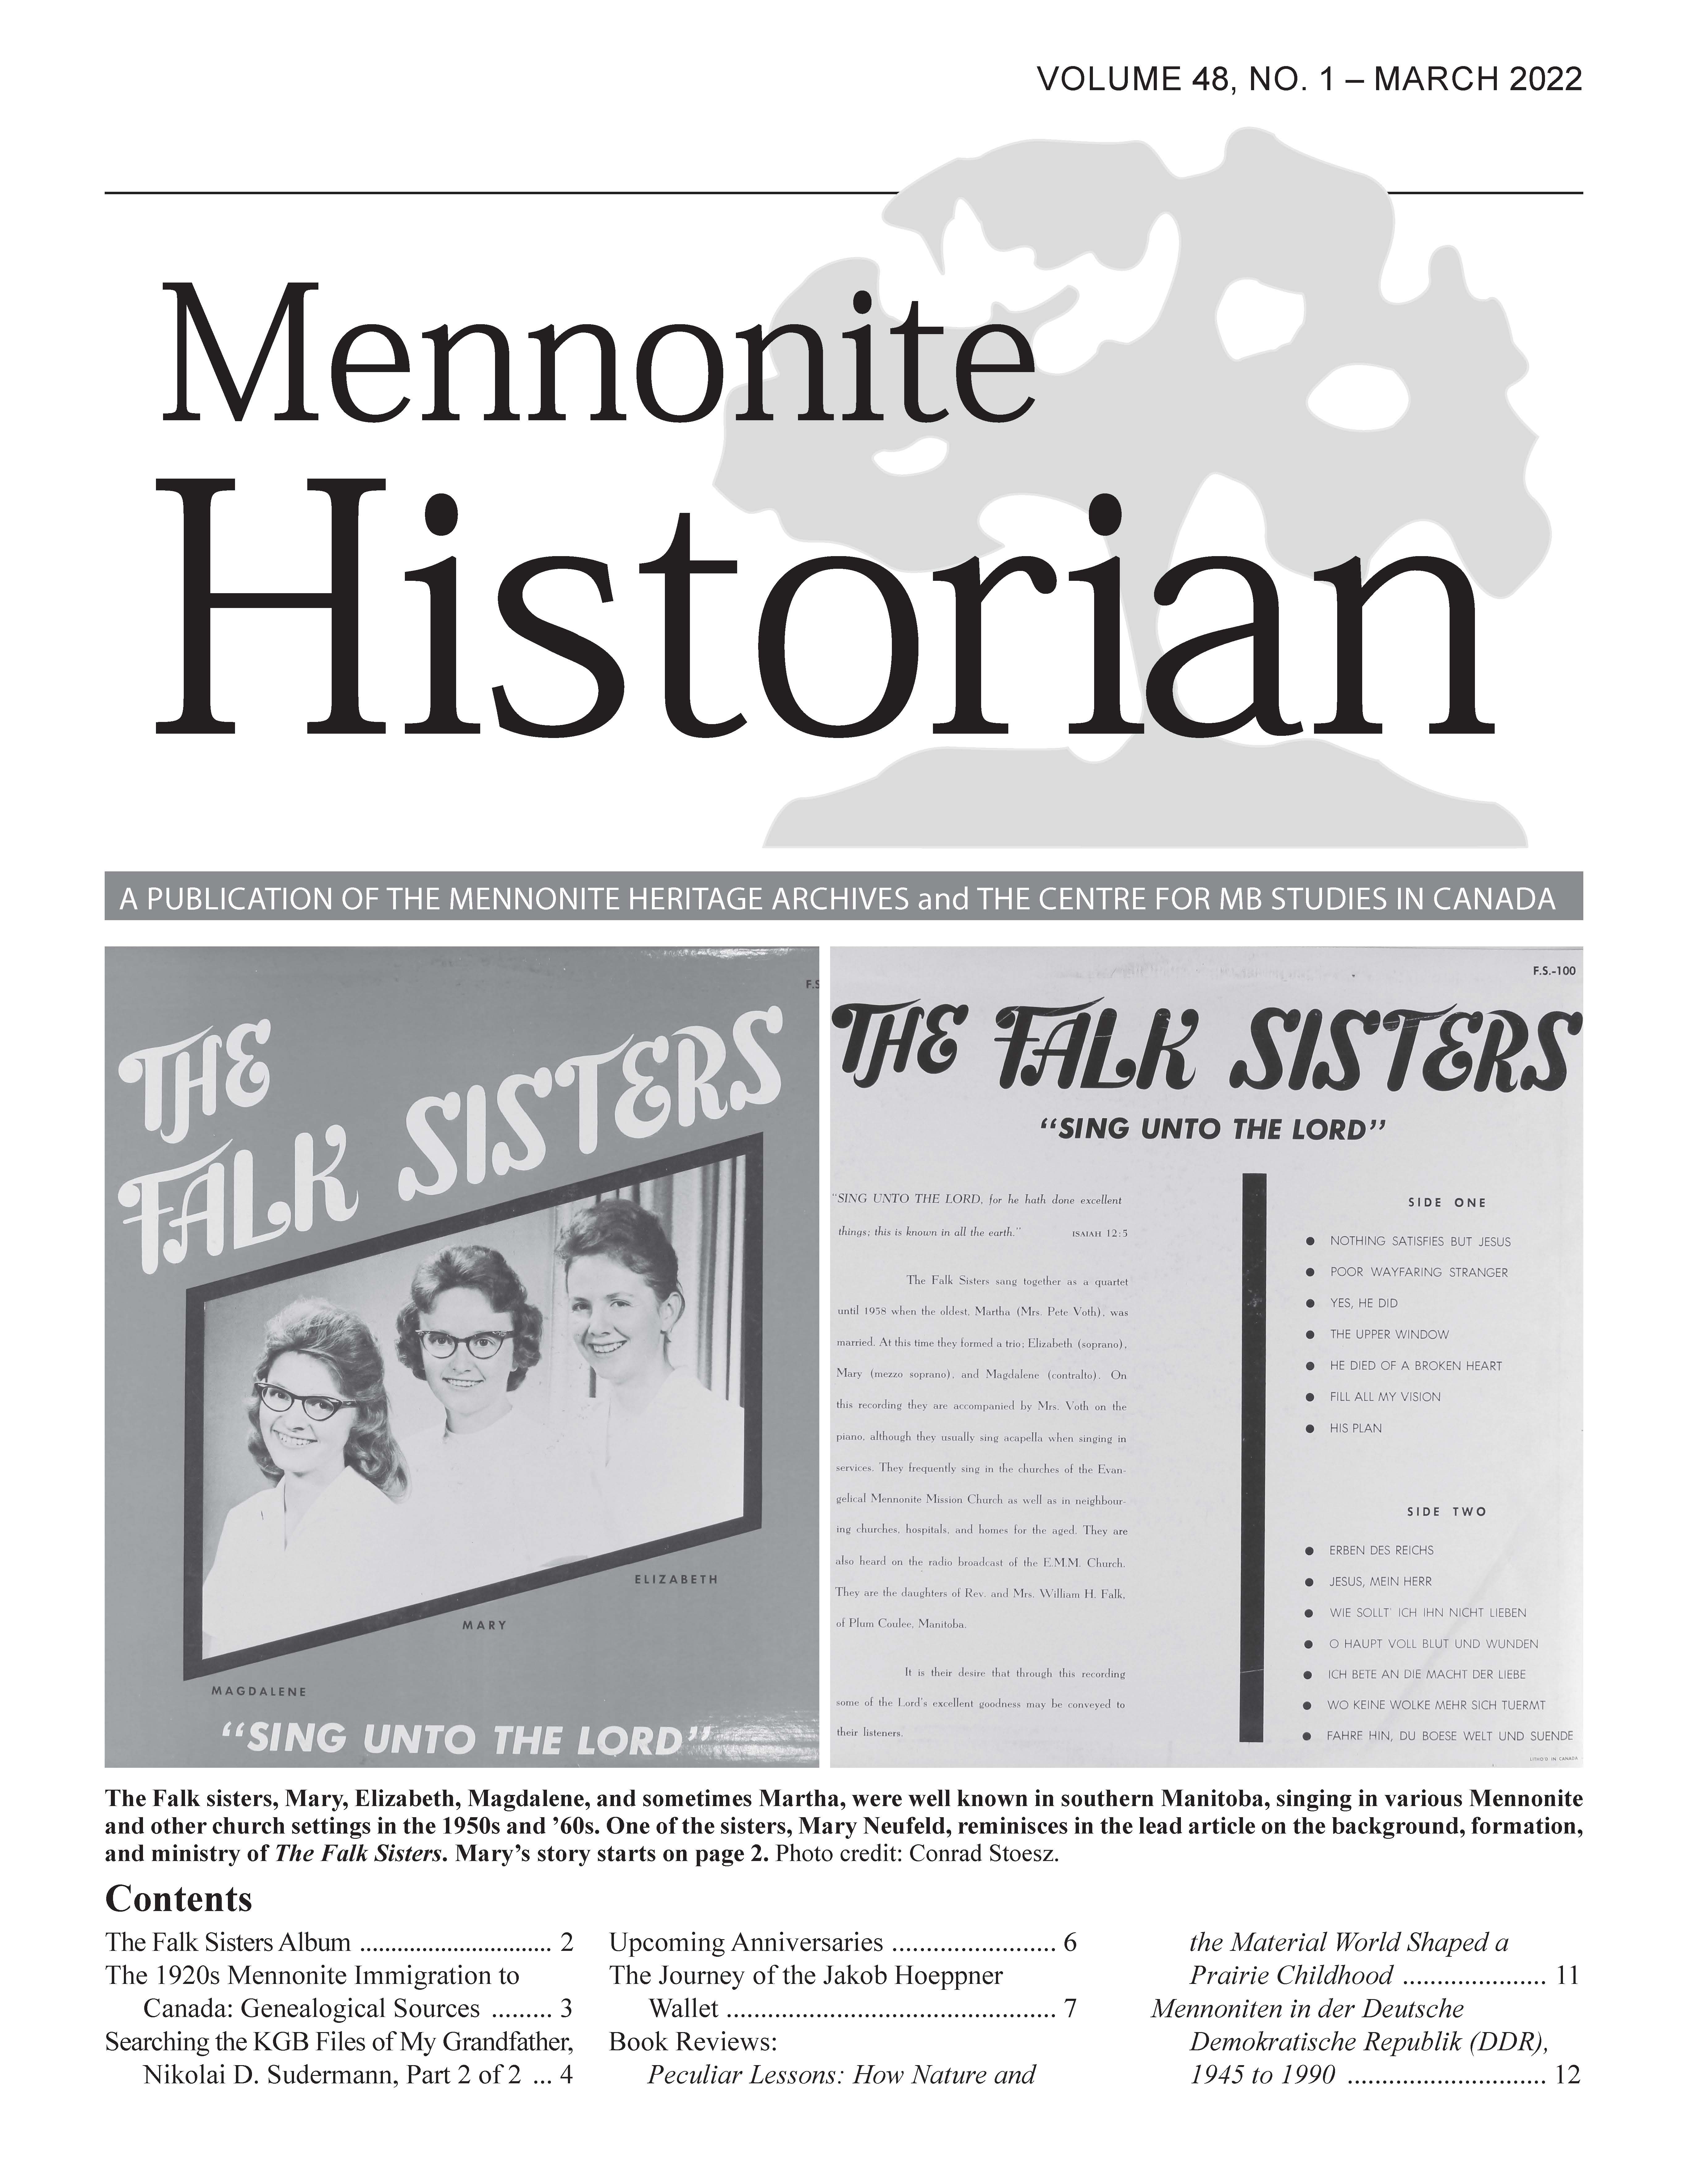 Mennonite Historian (March 2022)